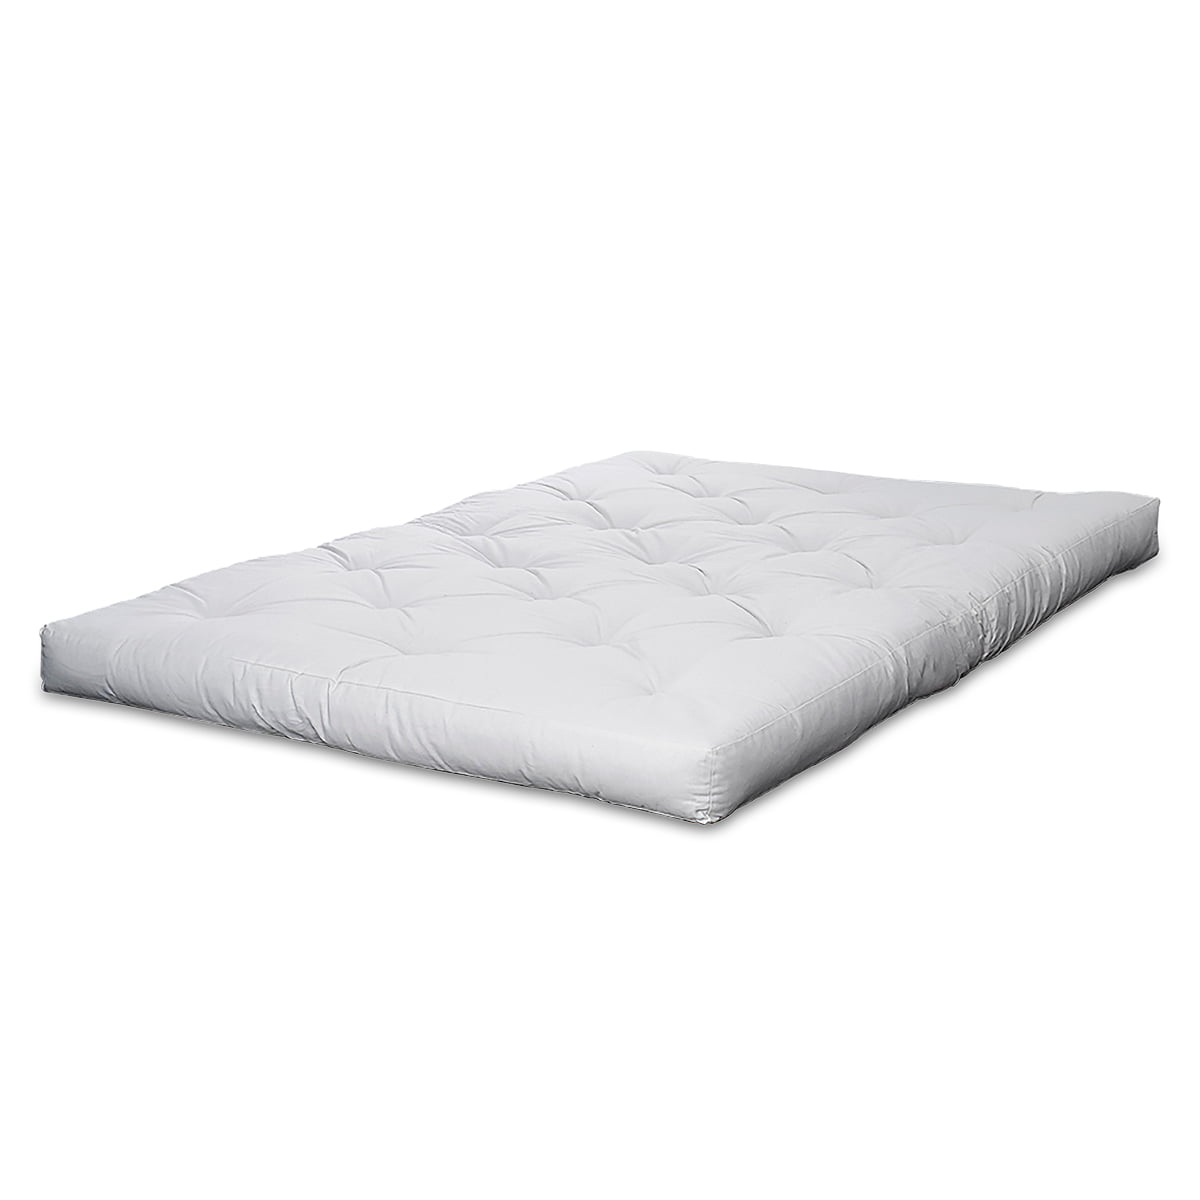 Moderat Betydning Helligdom Karup design - Futon mattress | Connox